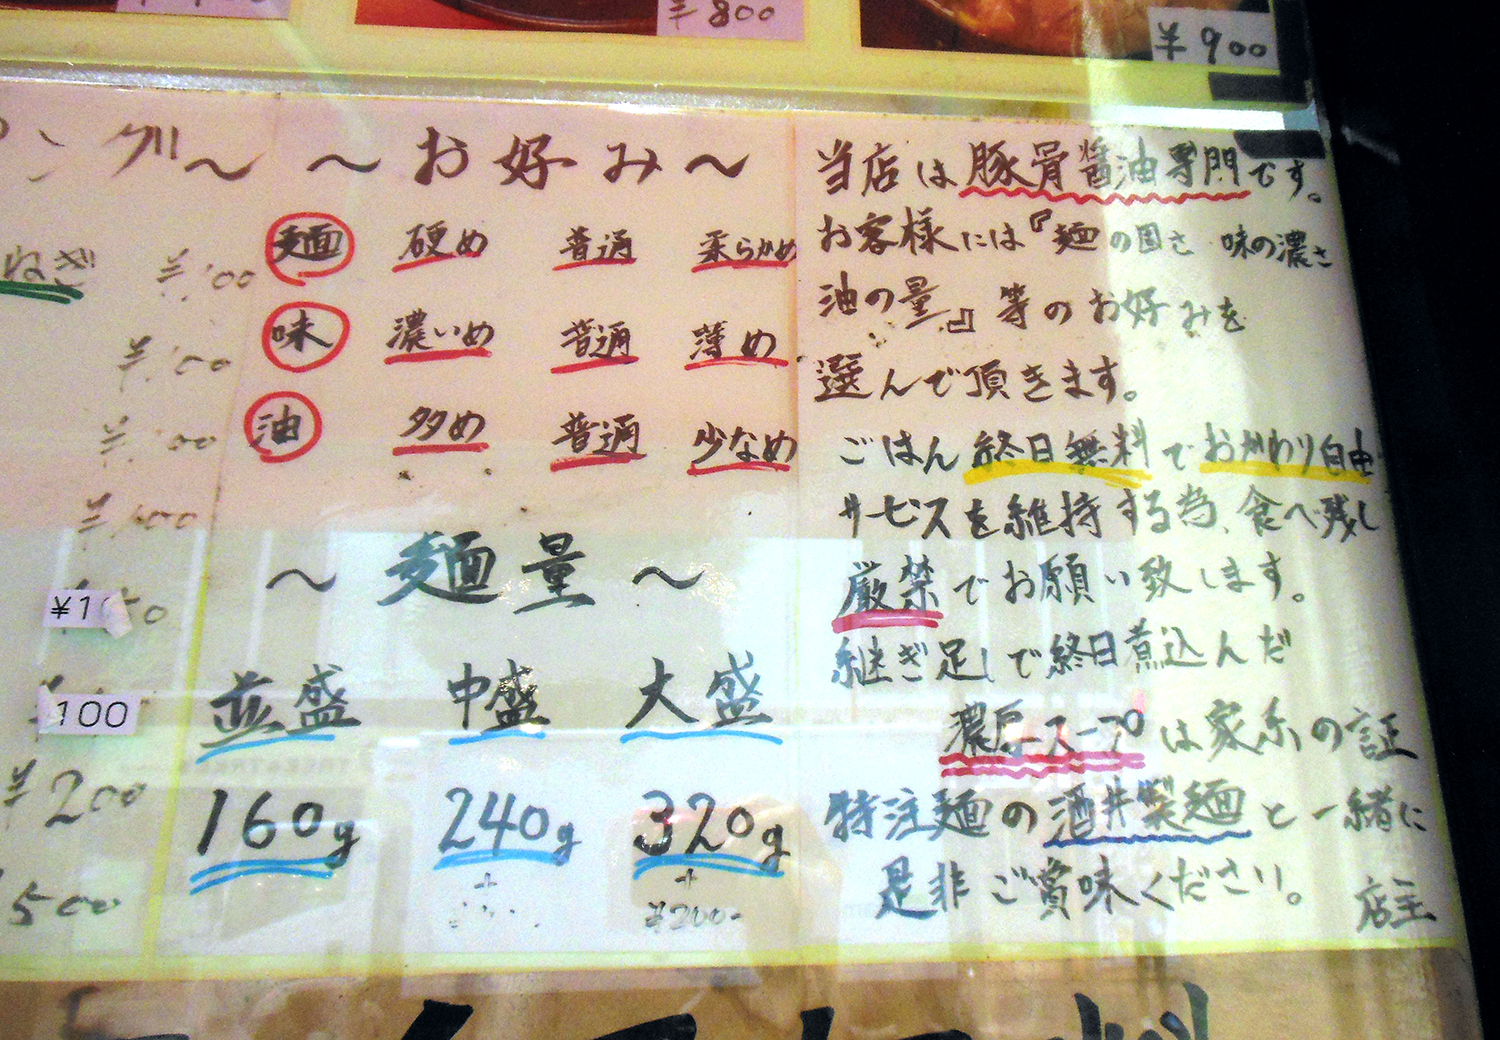 「味のお好み」と「麺の量」を案内する貼り紙。麺の中盛りはプラス100円、大盛りはプラス200円。